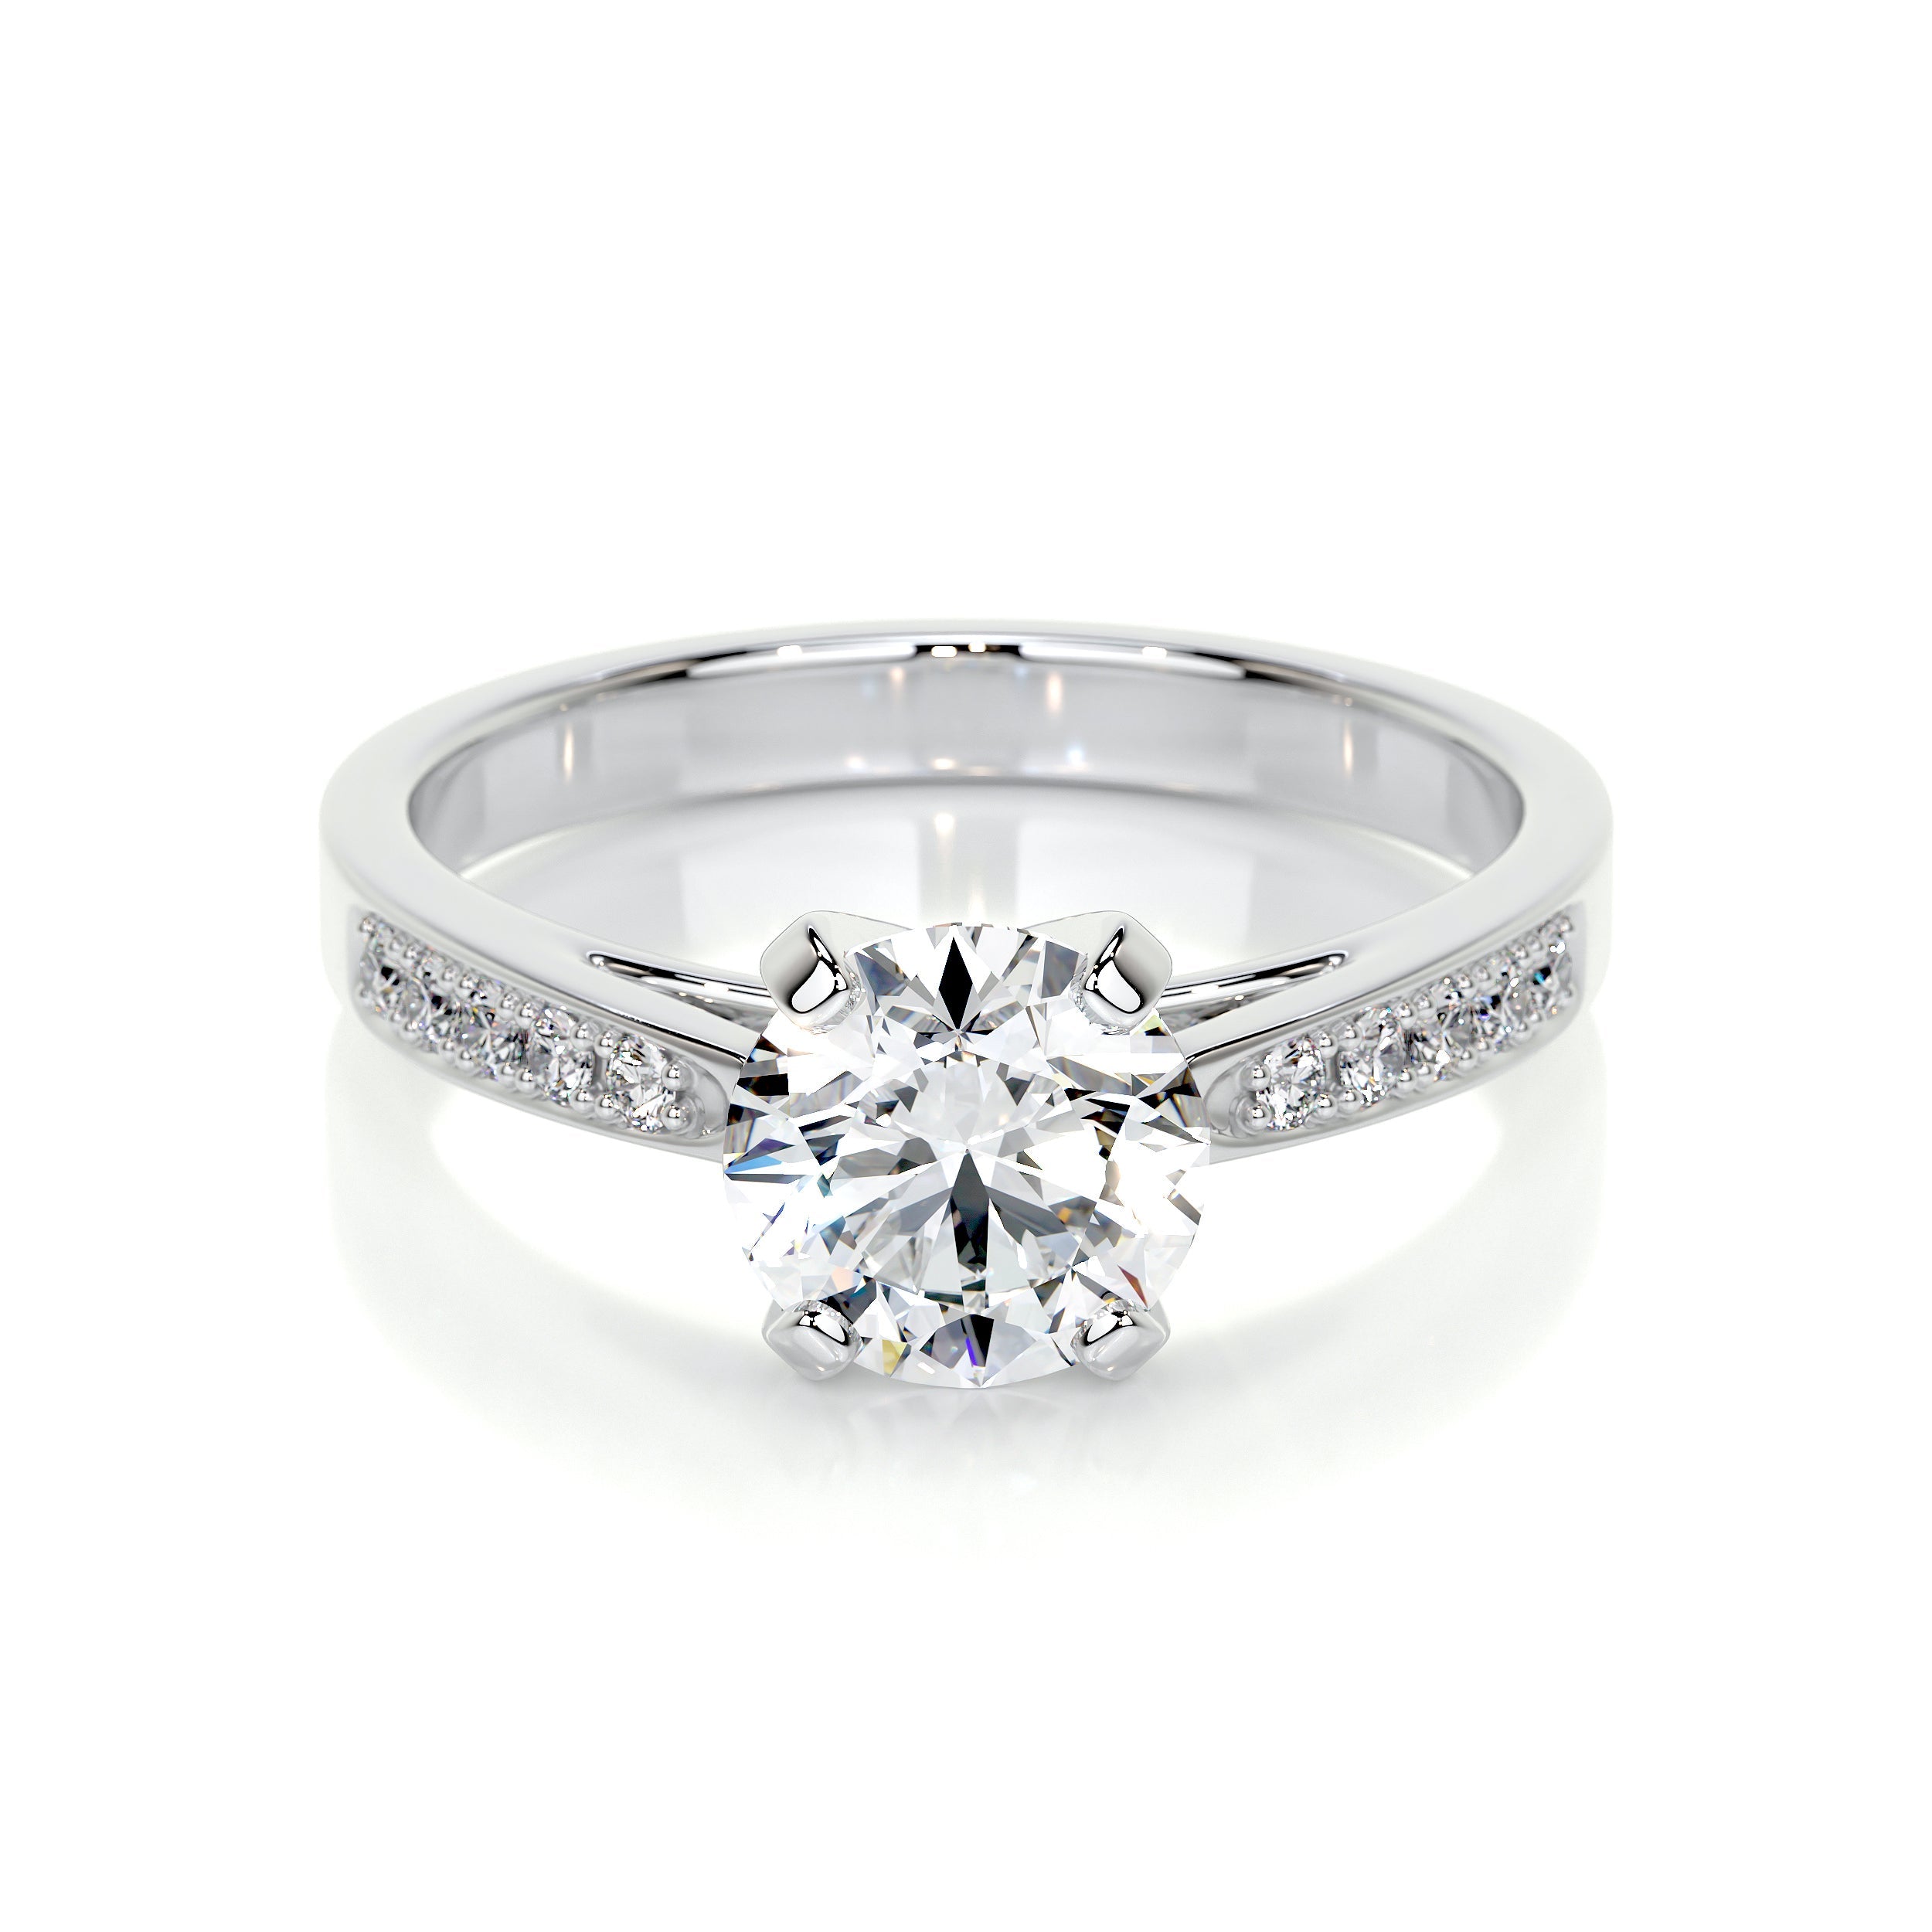 Margaret Lab Grown Diamond Ring   (1.35 Carat) -18K White Gold